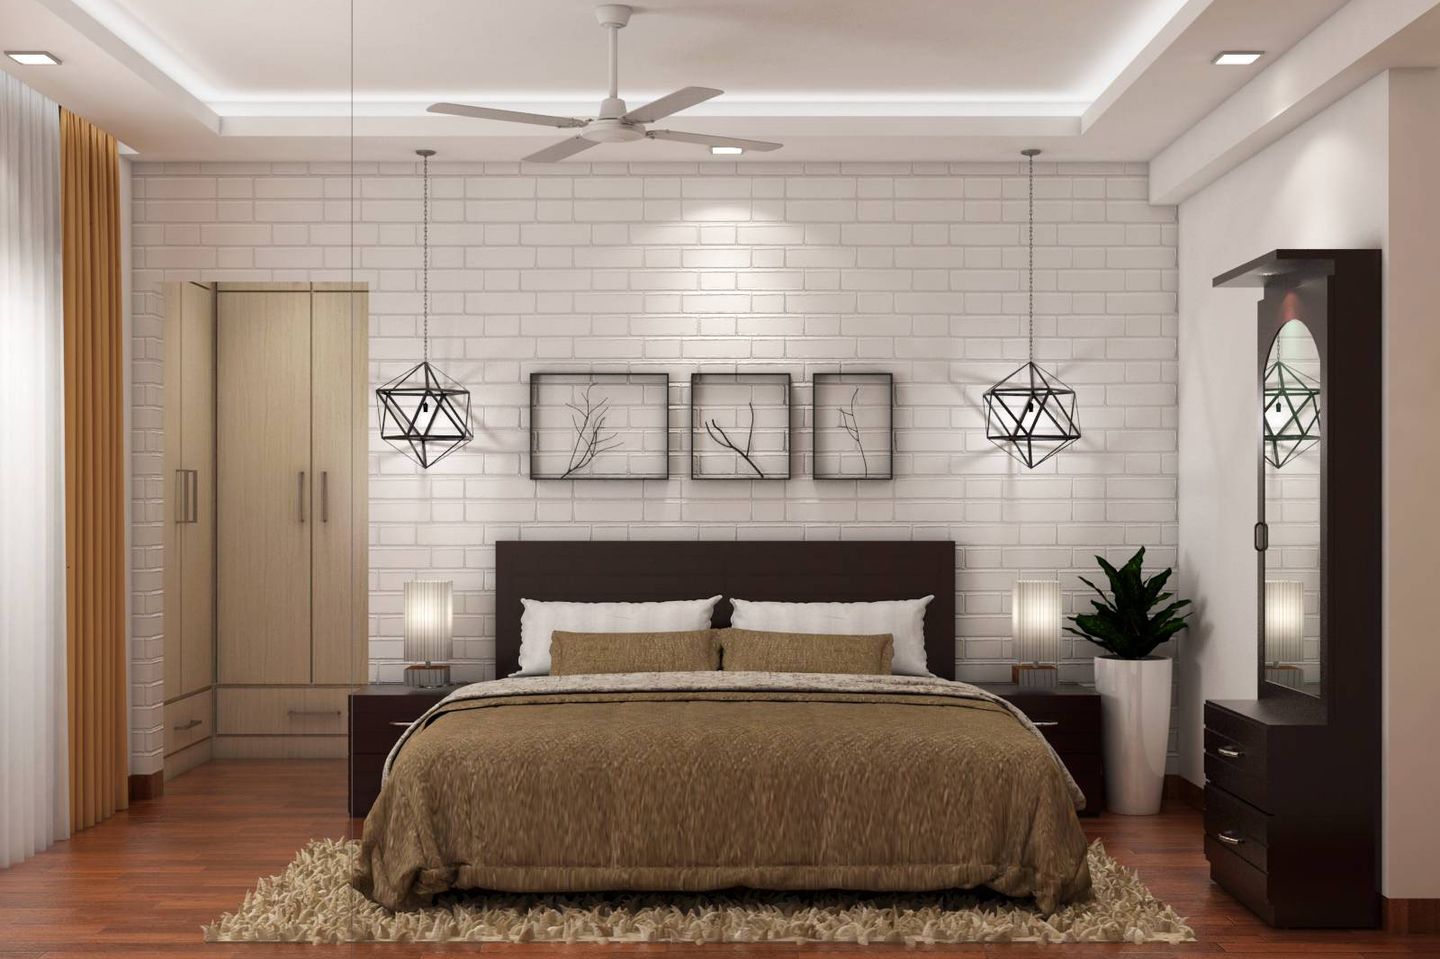 Brick Bedroom Wallpaper Design In White - Livspace